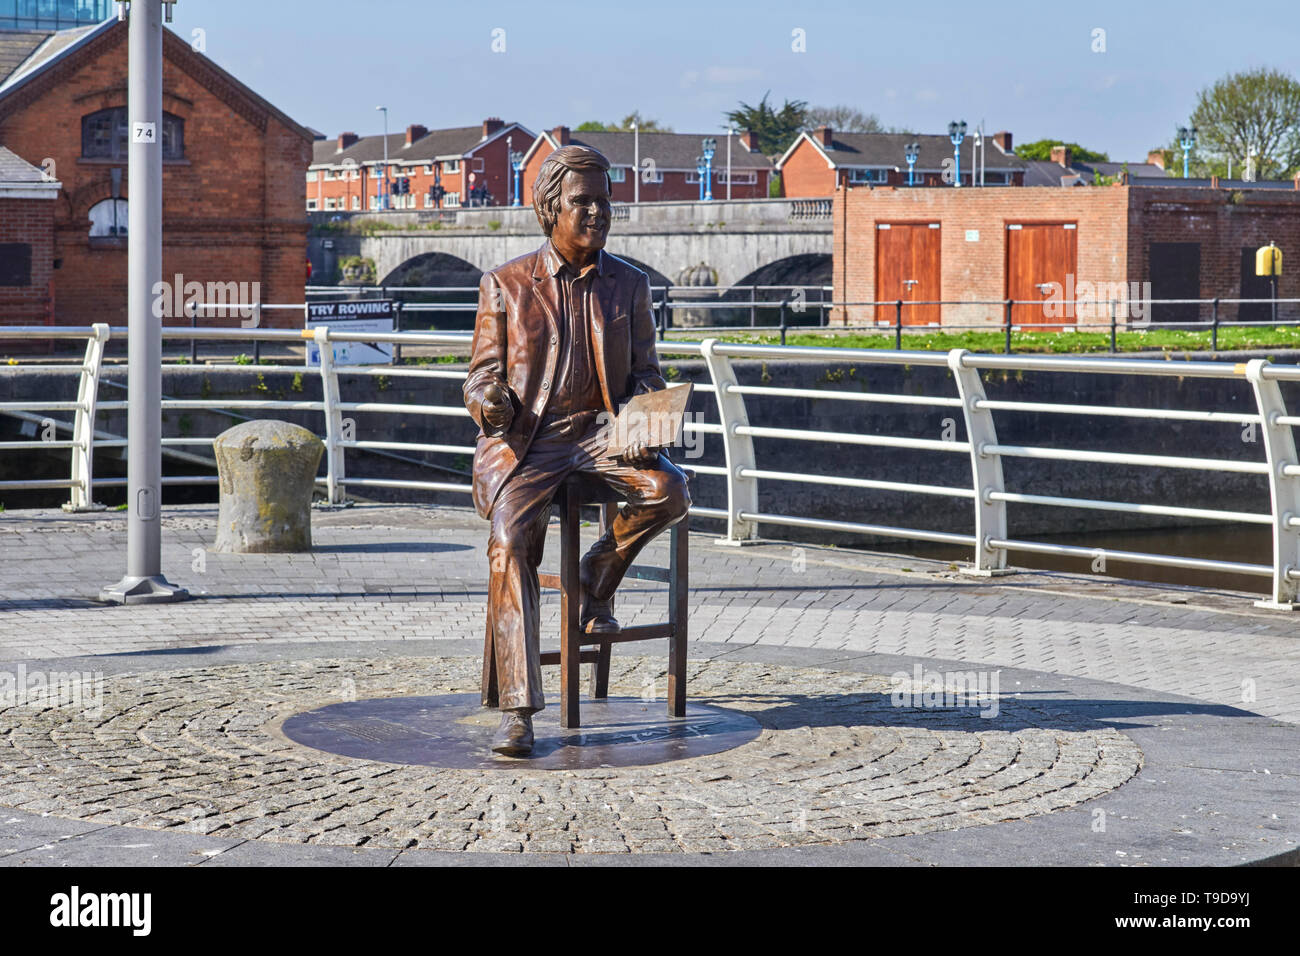 Statue de Terry Wogan le présentateur de radio et de télévision qui était originaire de Limerick, Irlande Banque D'Images